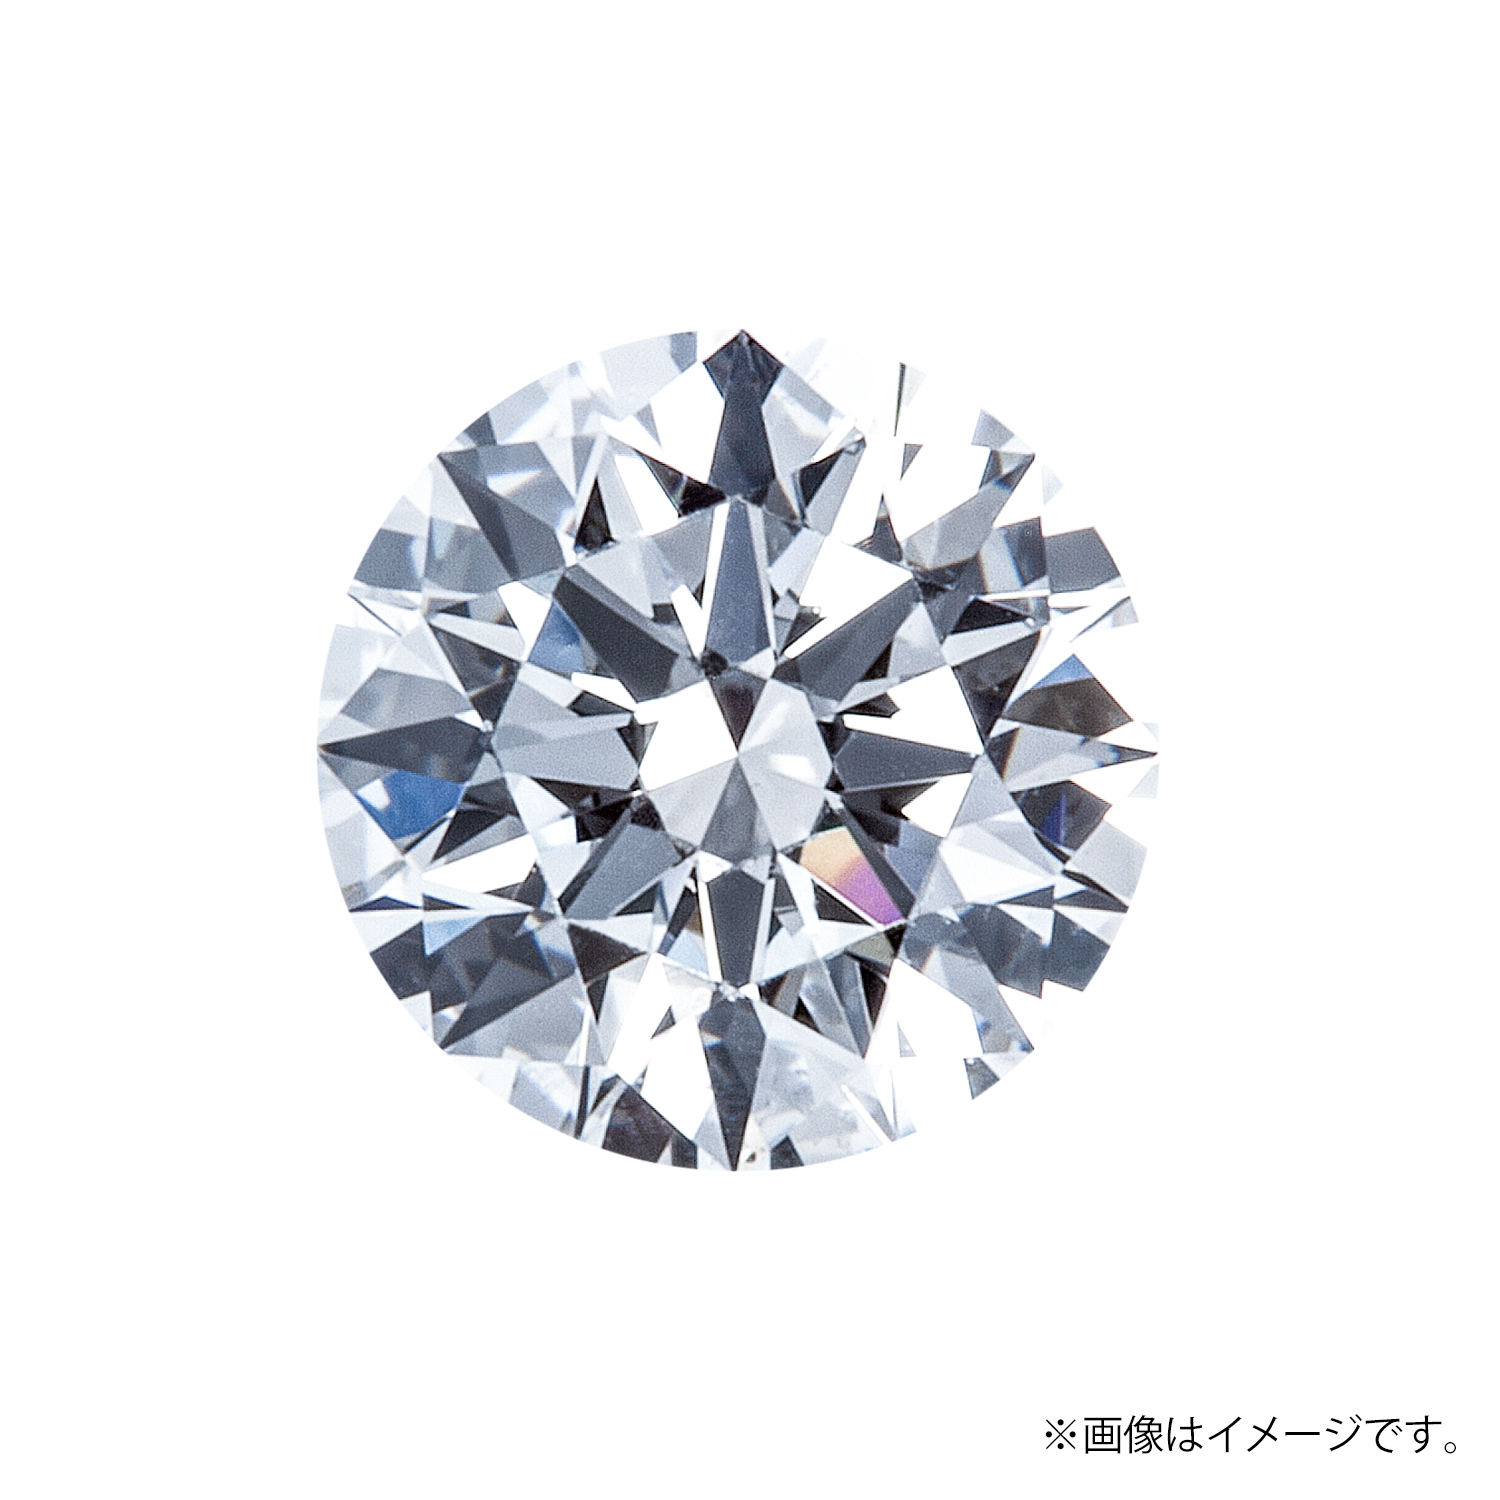 0.528ct Round ダイヤモンド / F / VS1 / 3EX H&C